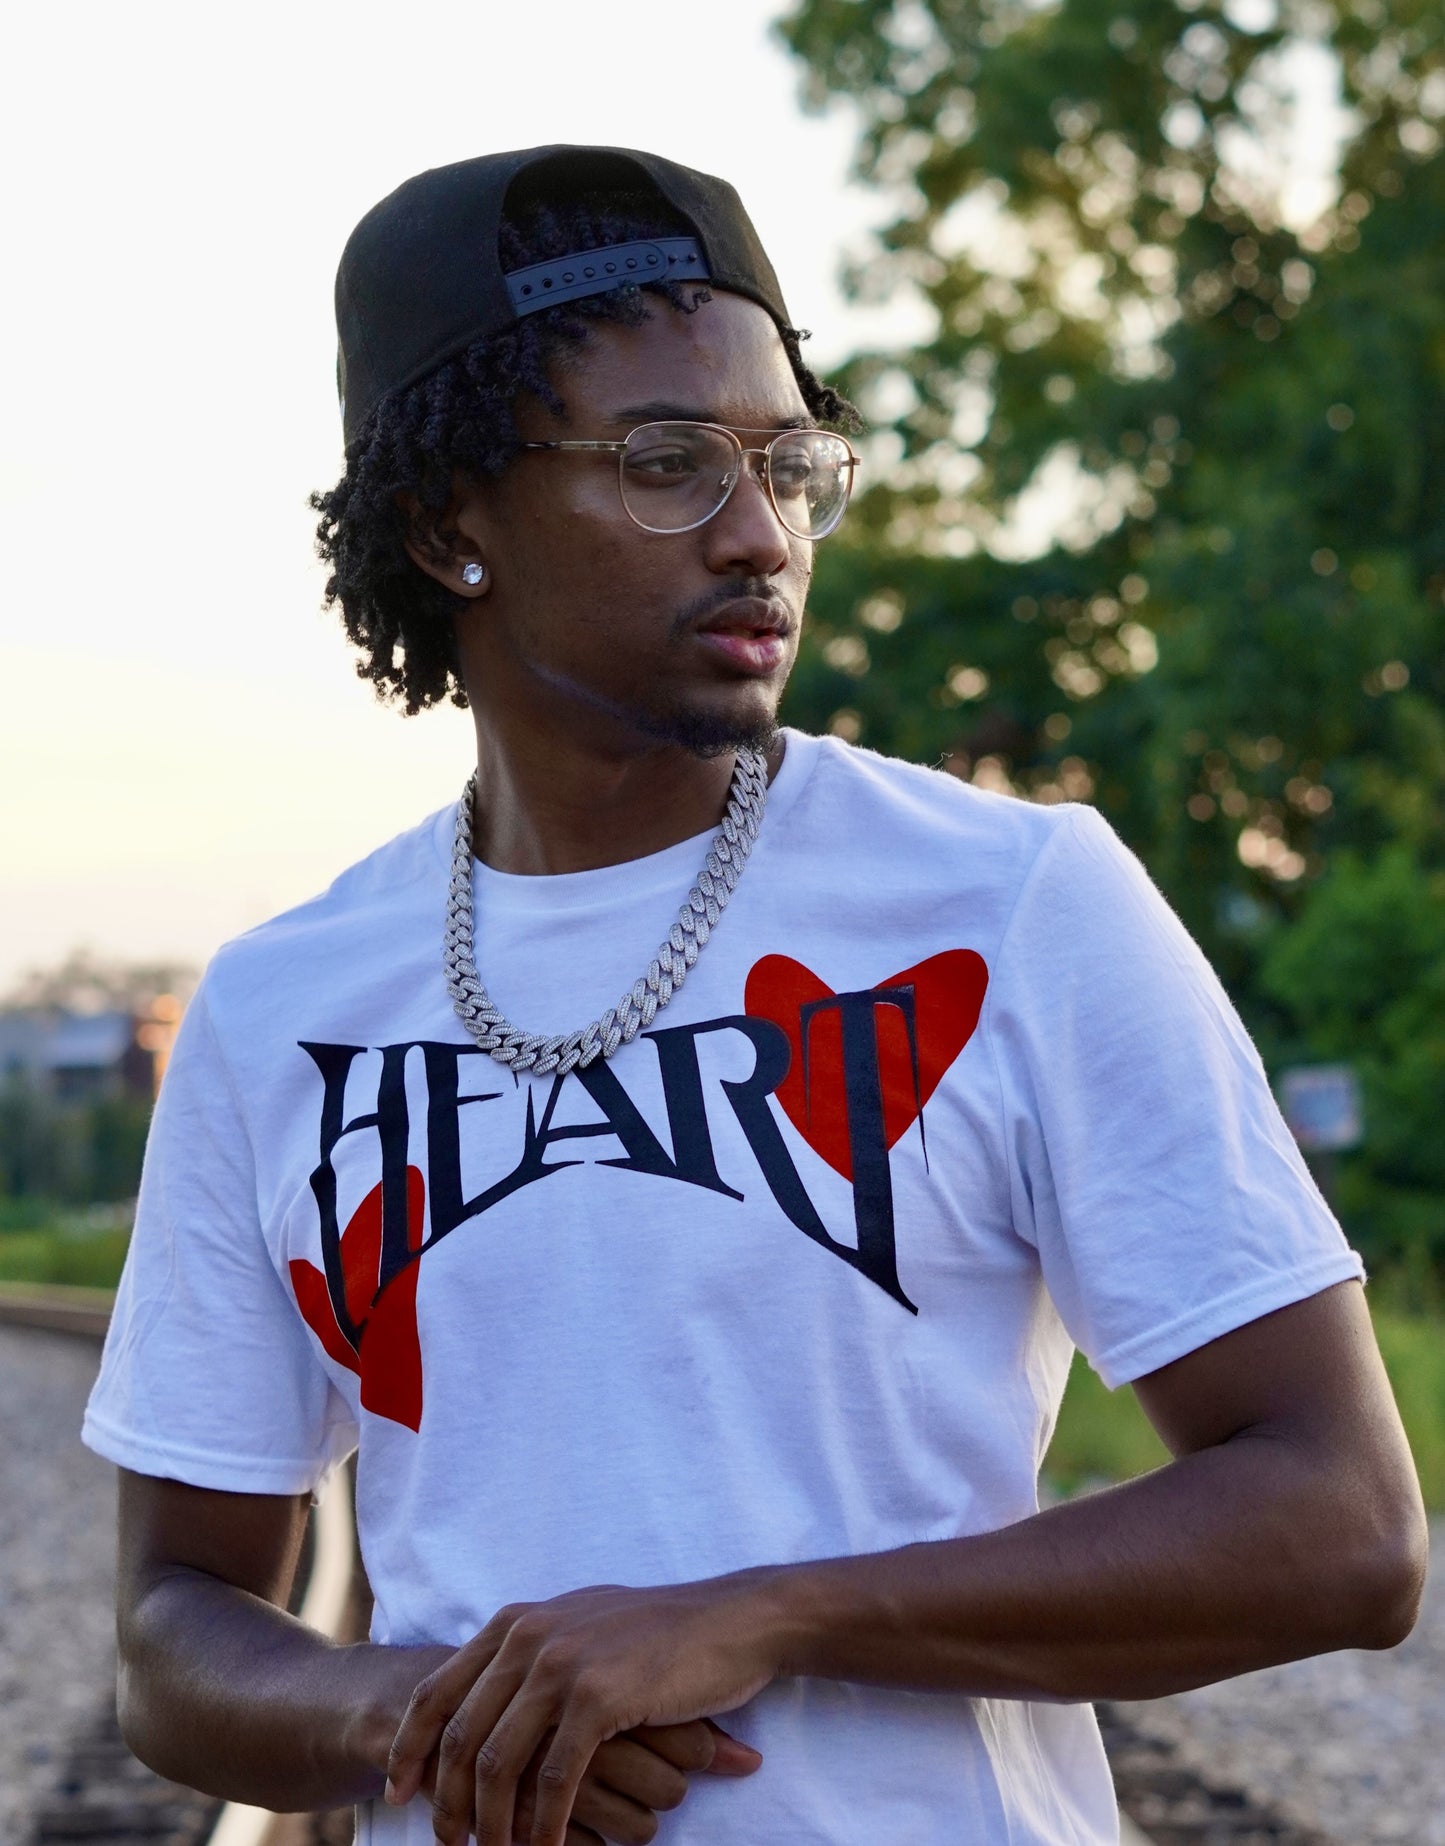 "Heart" T-shirt